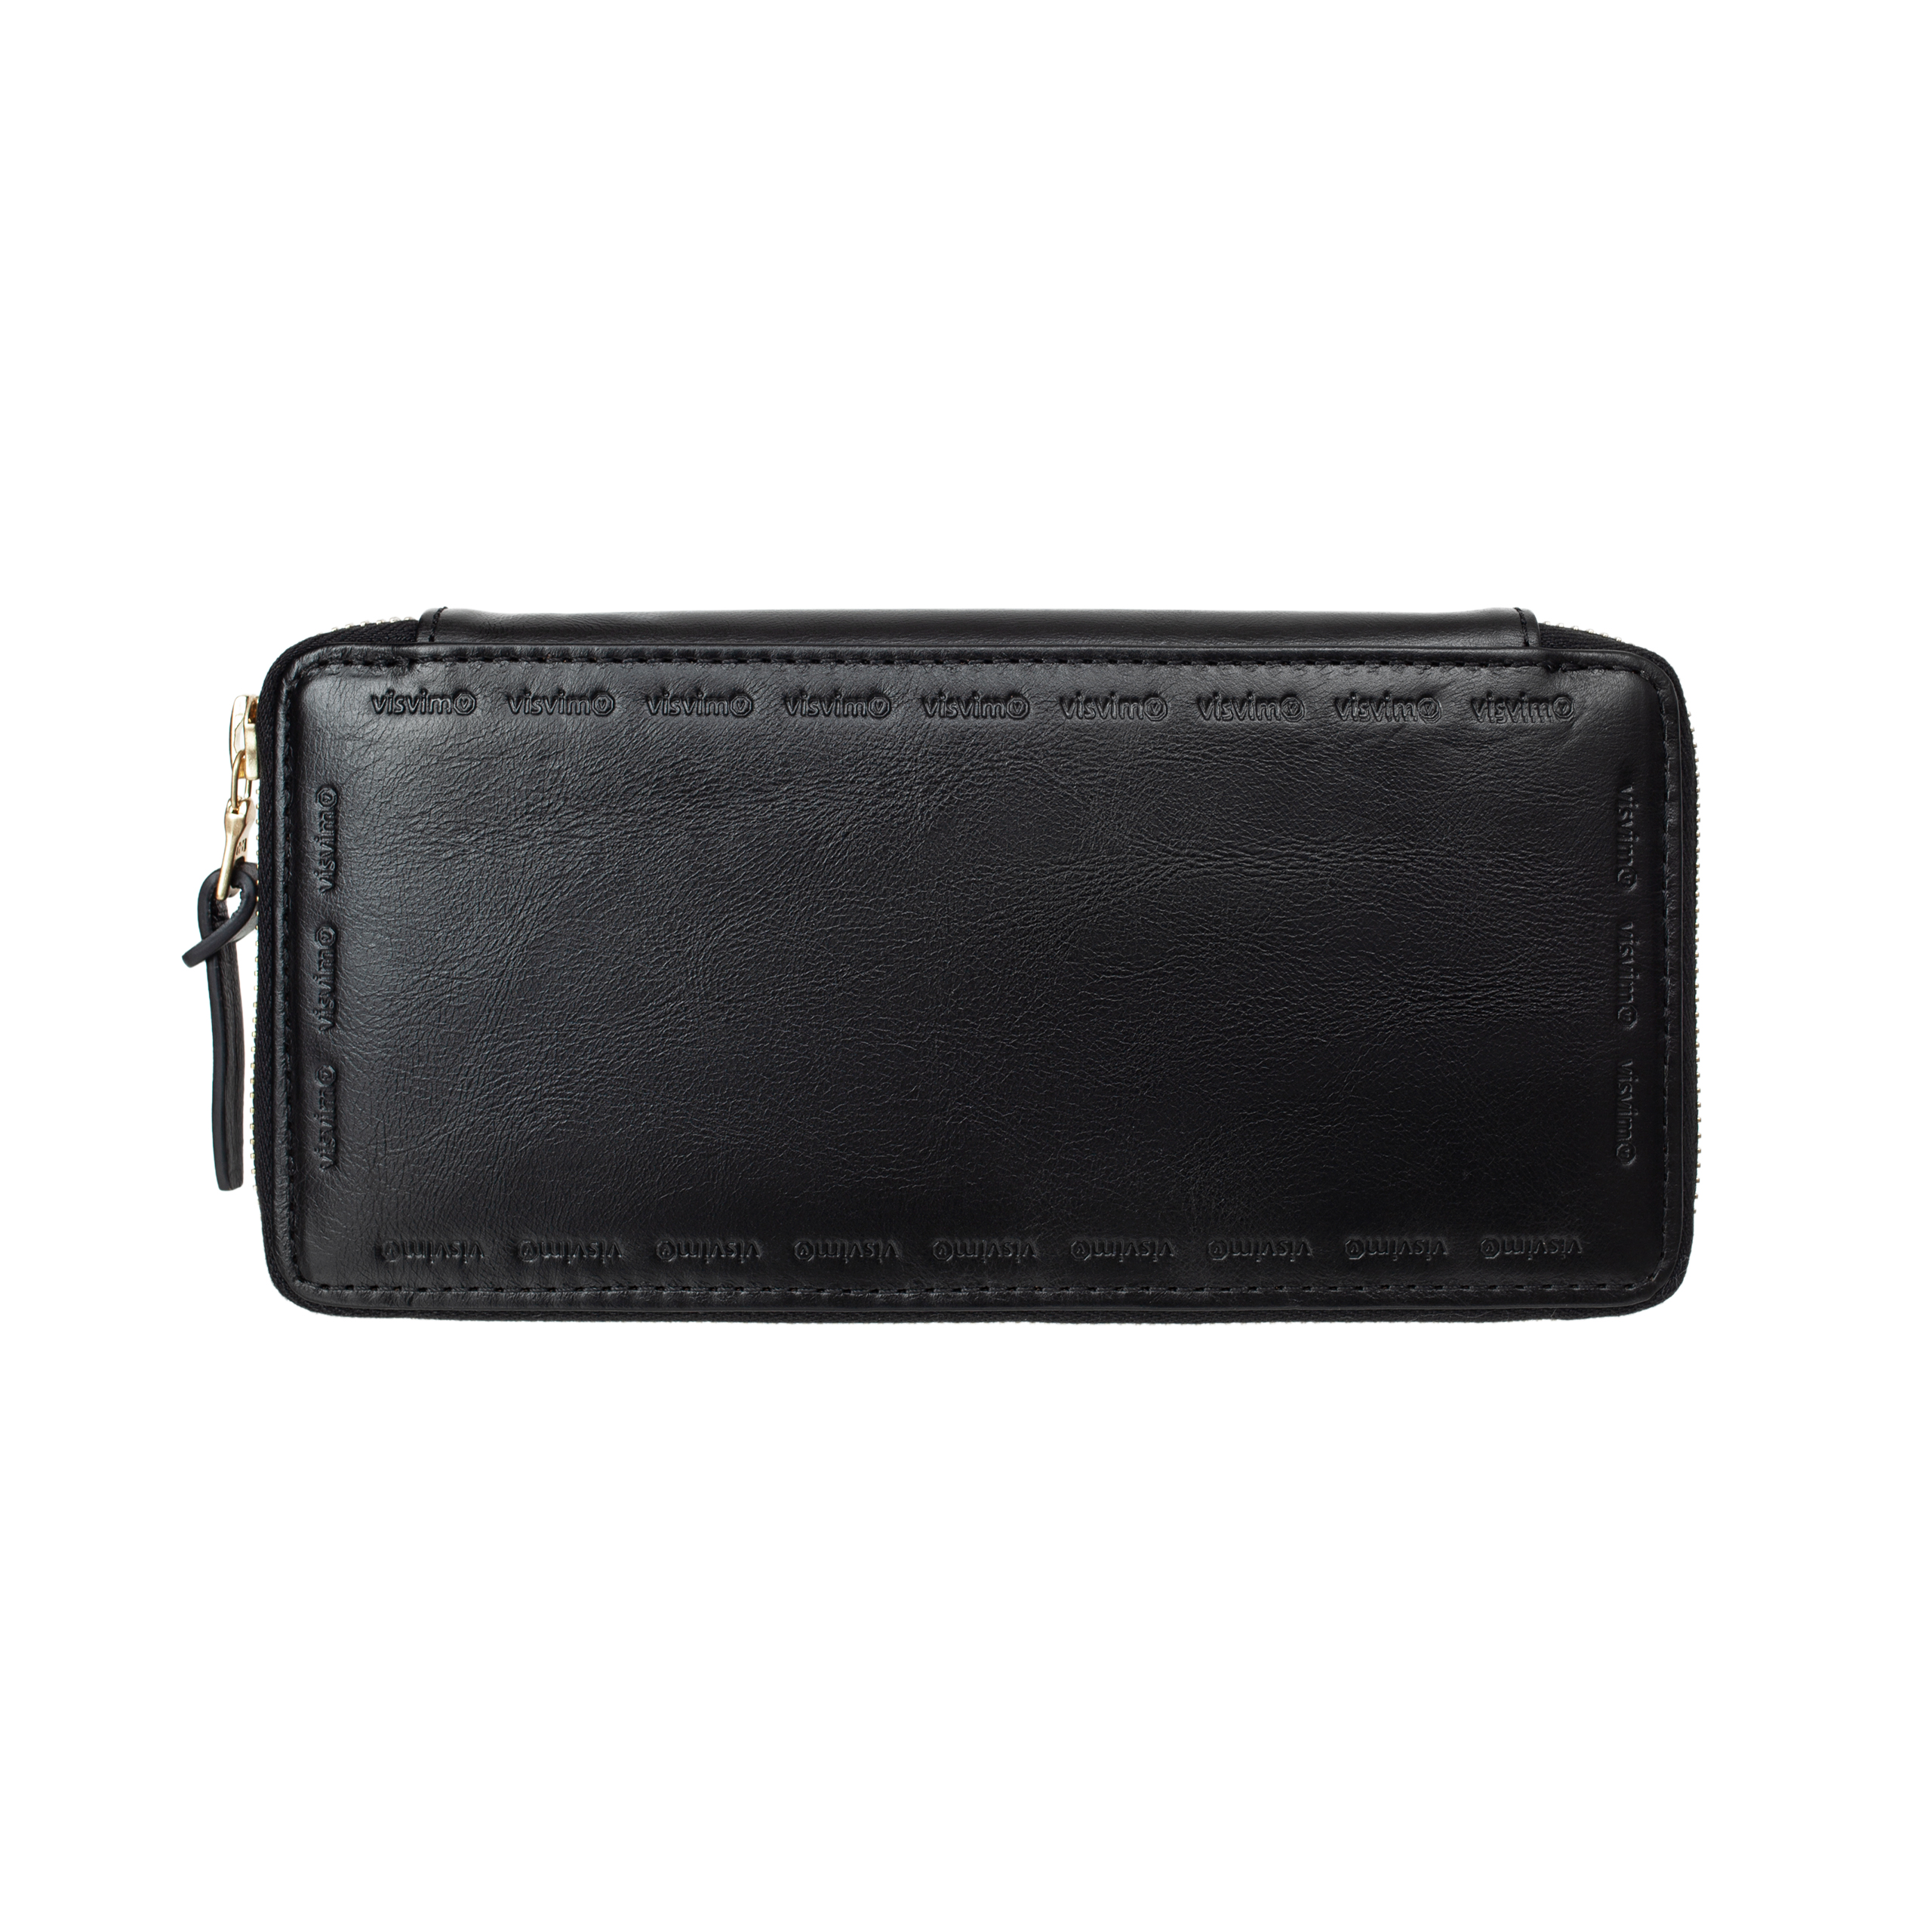 Buy visvim men black leather long wallet for £725 online on SV77